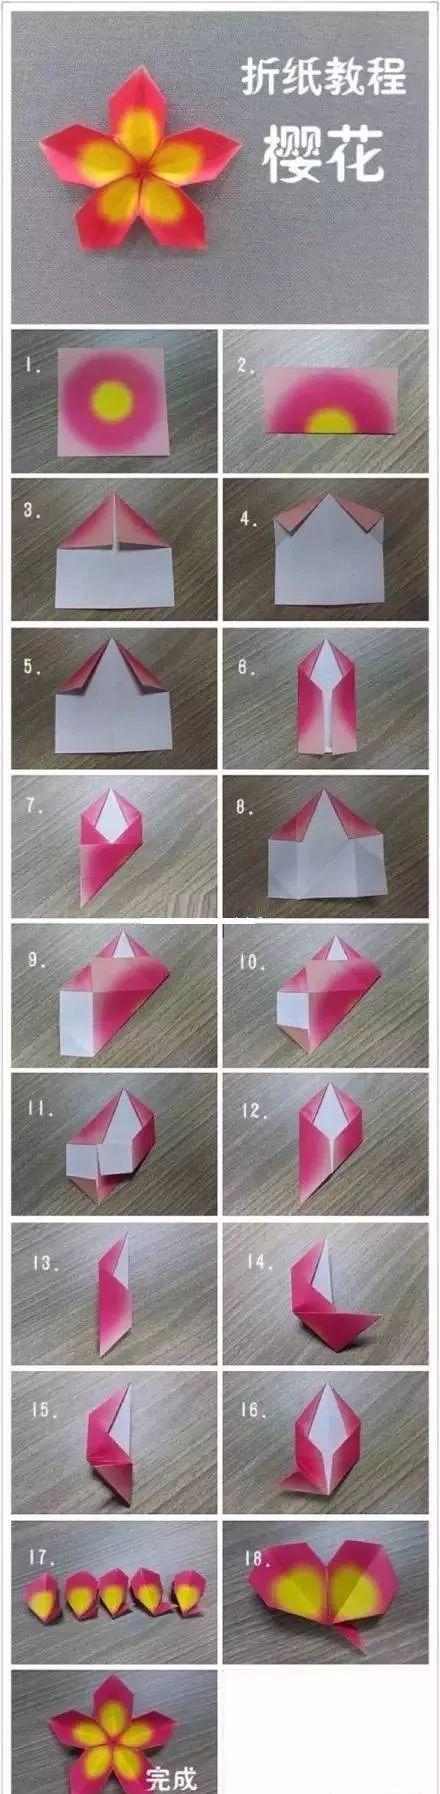 创意折纸樱花